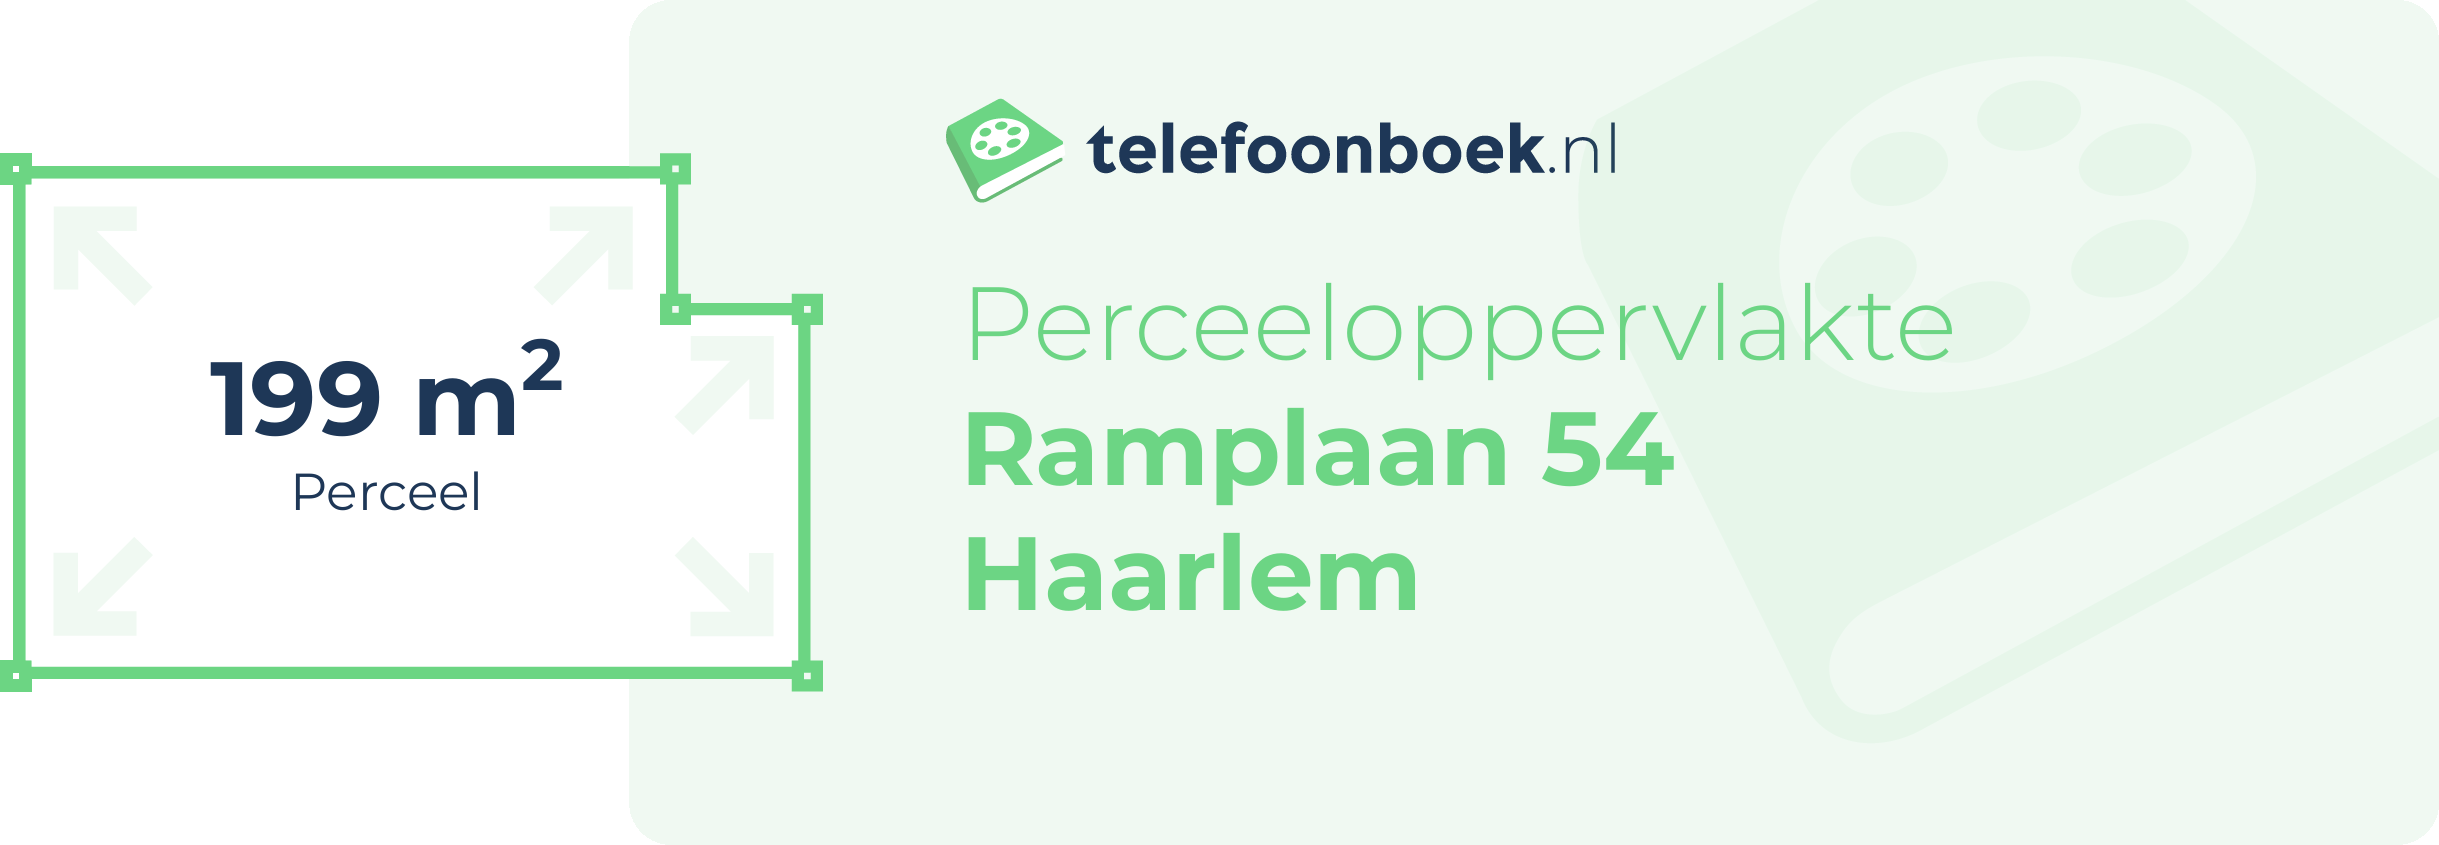 Perceeloppervlakte Ramplaan 54 Haarlem